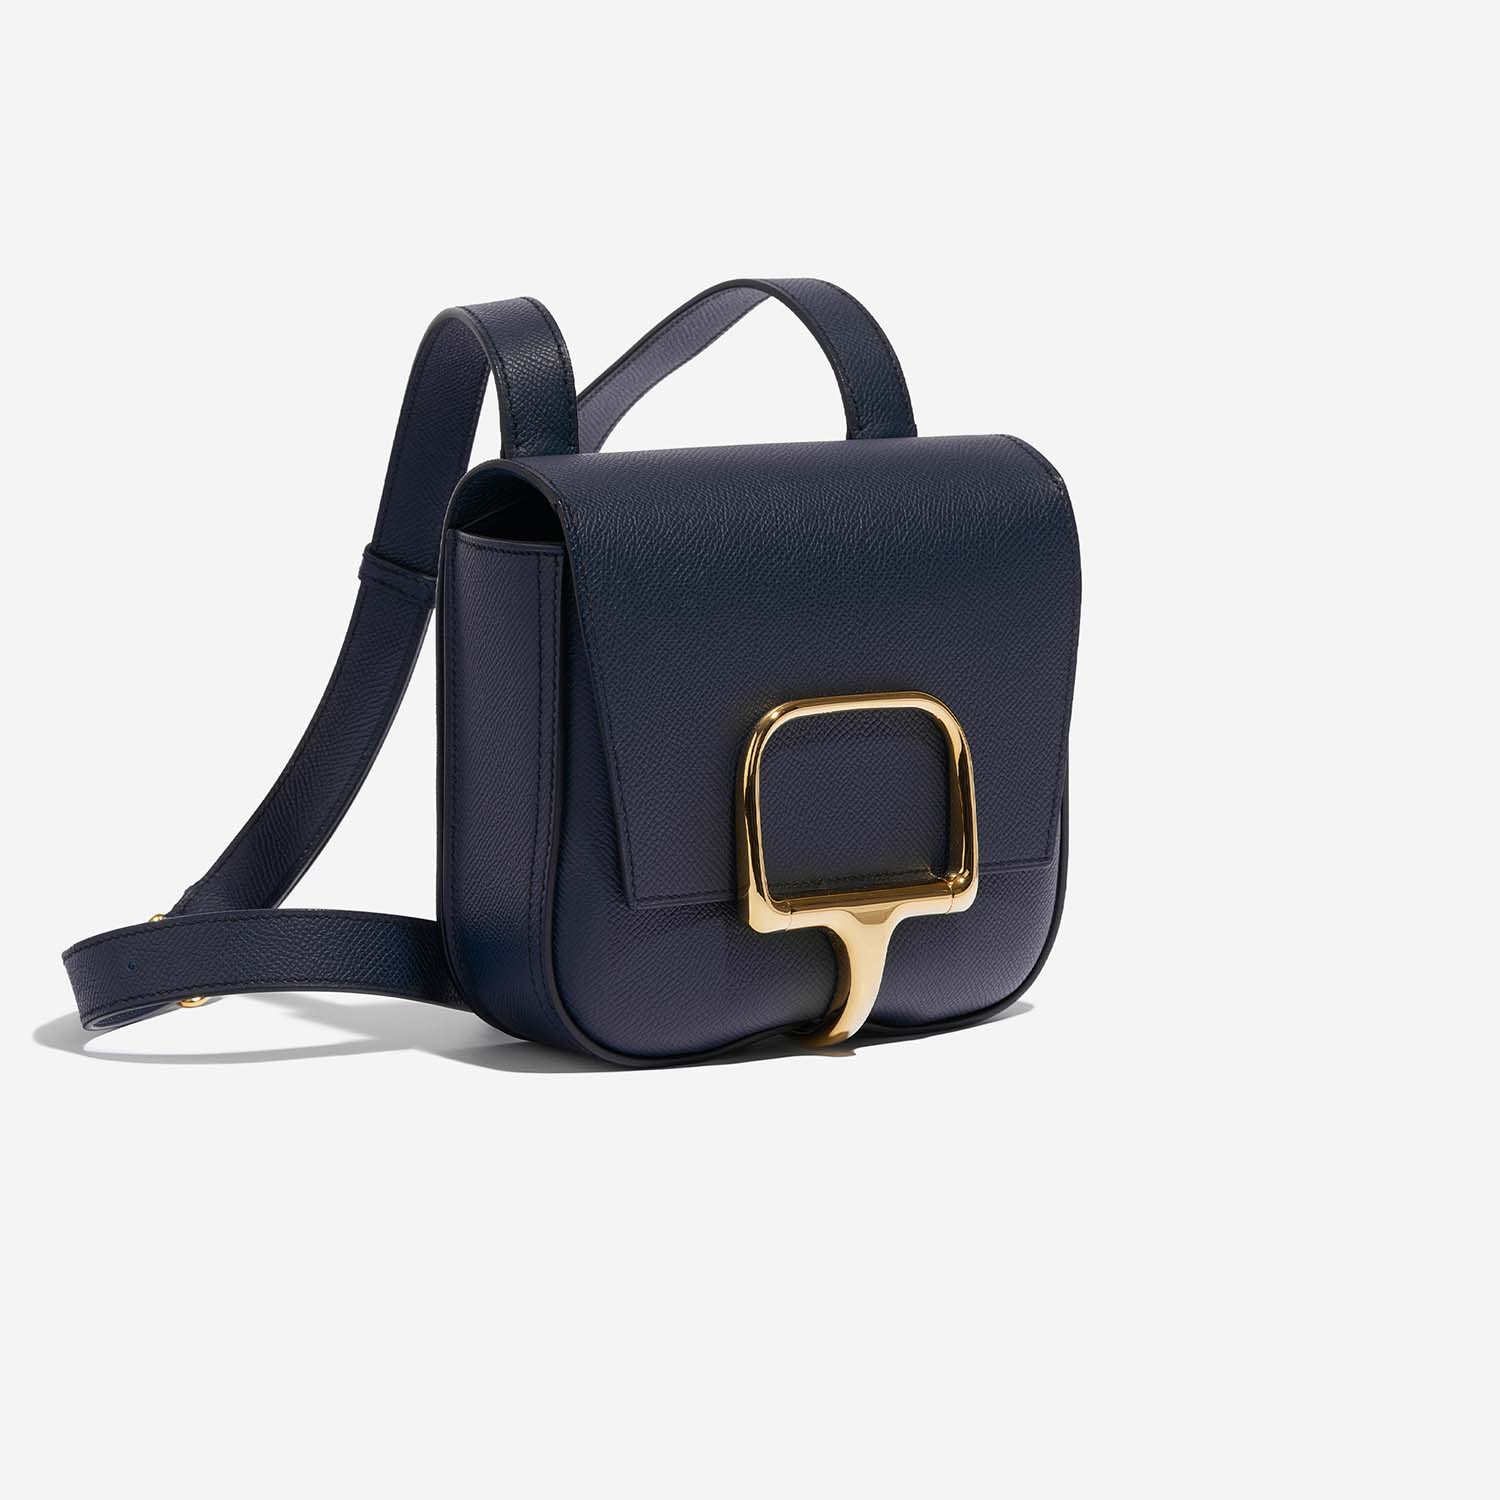 Hermès DellaCavalleria Mini BleuIndigo Side Front | Verkaufen Sie Ihre Designer-Tasche auf Saclab.com